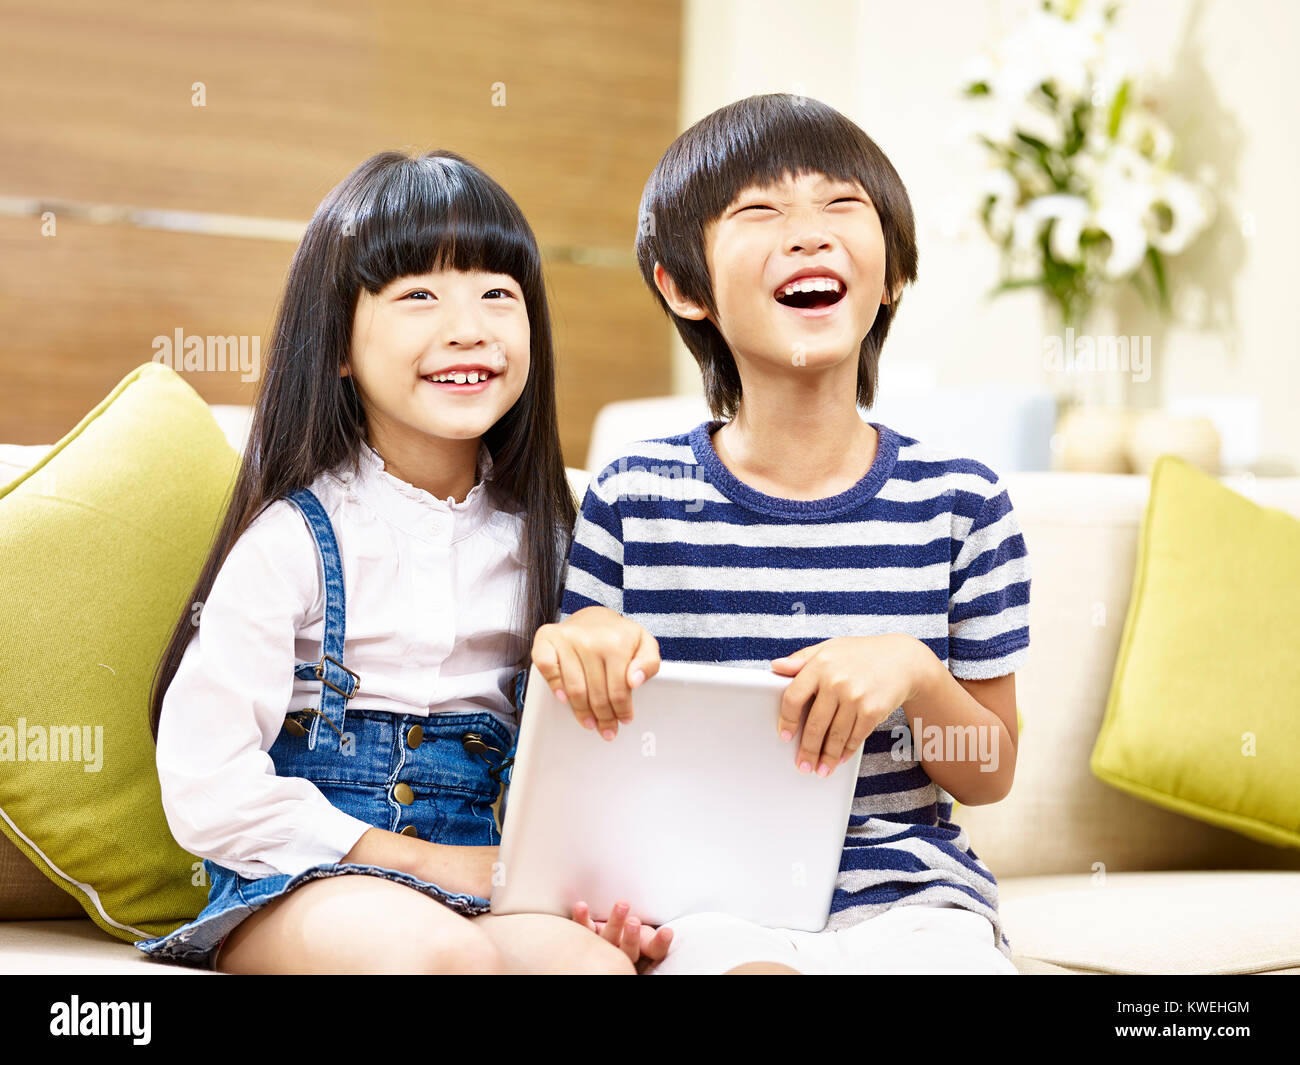 Deux enfants asiatiques mignon petit garçon et petite fille assise sur la table holding digital tablet rire. Banque D'Images